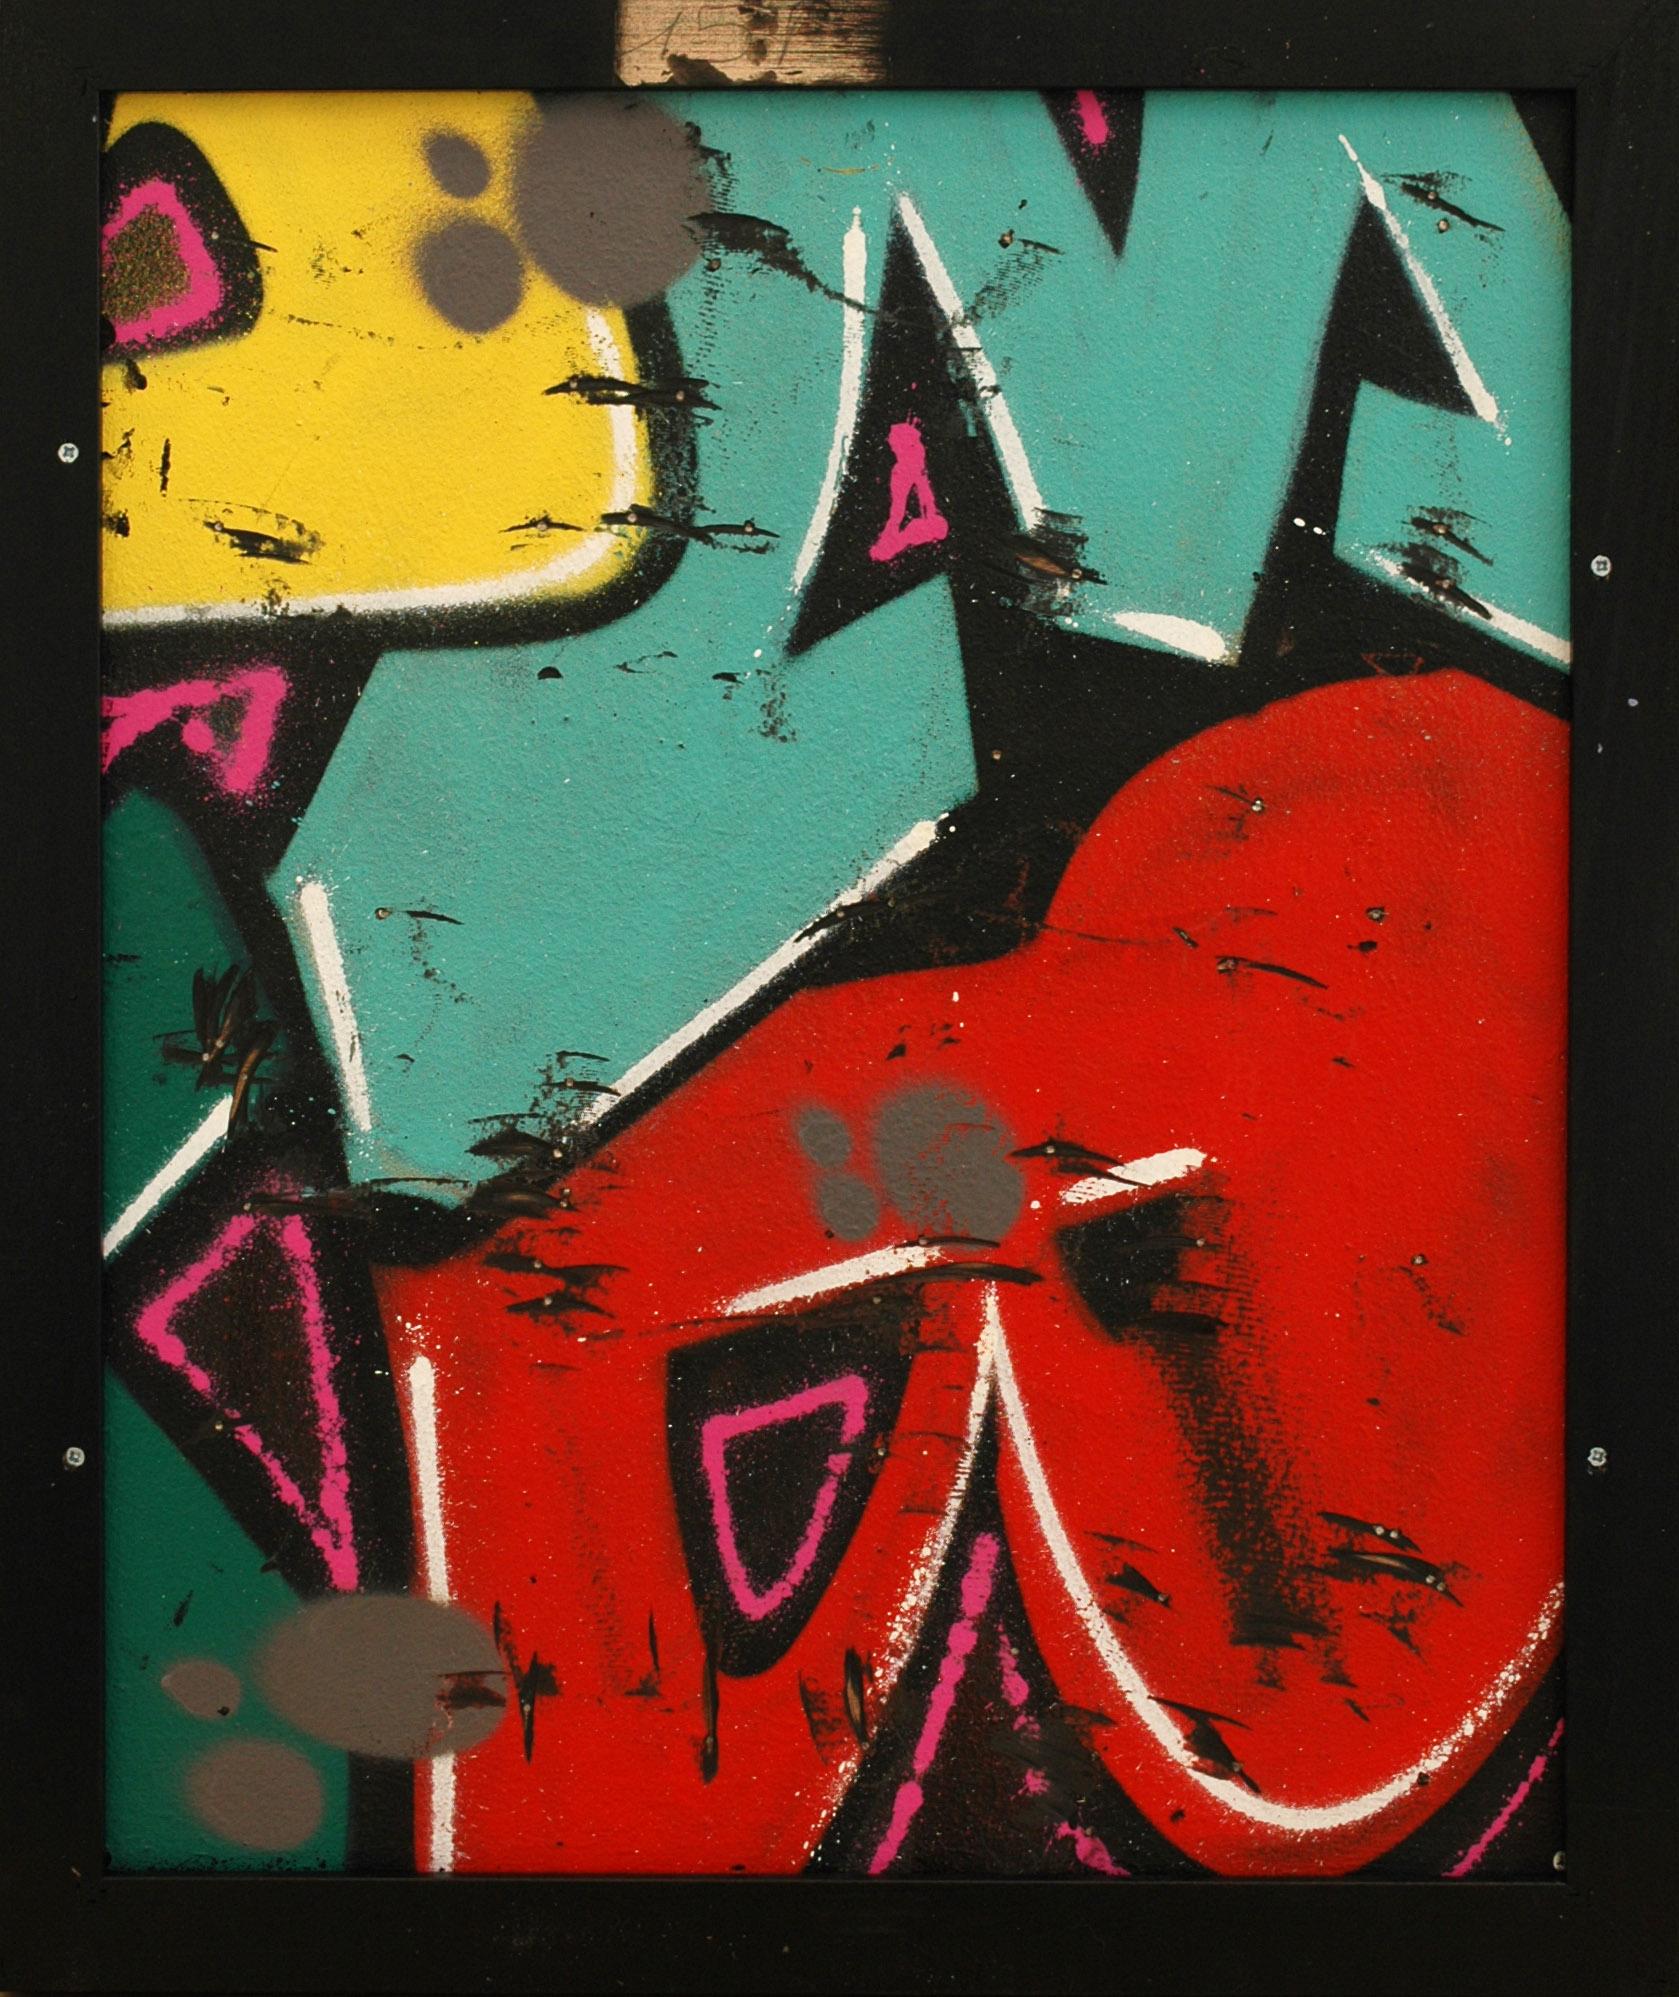 Spray und Acryl auf Leinwand
65 x 54 cm (25.6 x 21.3 in)
Einzigartige Kunstwerke
schwarzer Karton (65 x 55 x 5 cm) - (25,6 x 21,7 x 2 in)
Signiert von der Künstlerin
Echtheitszertifikat